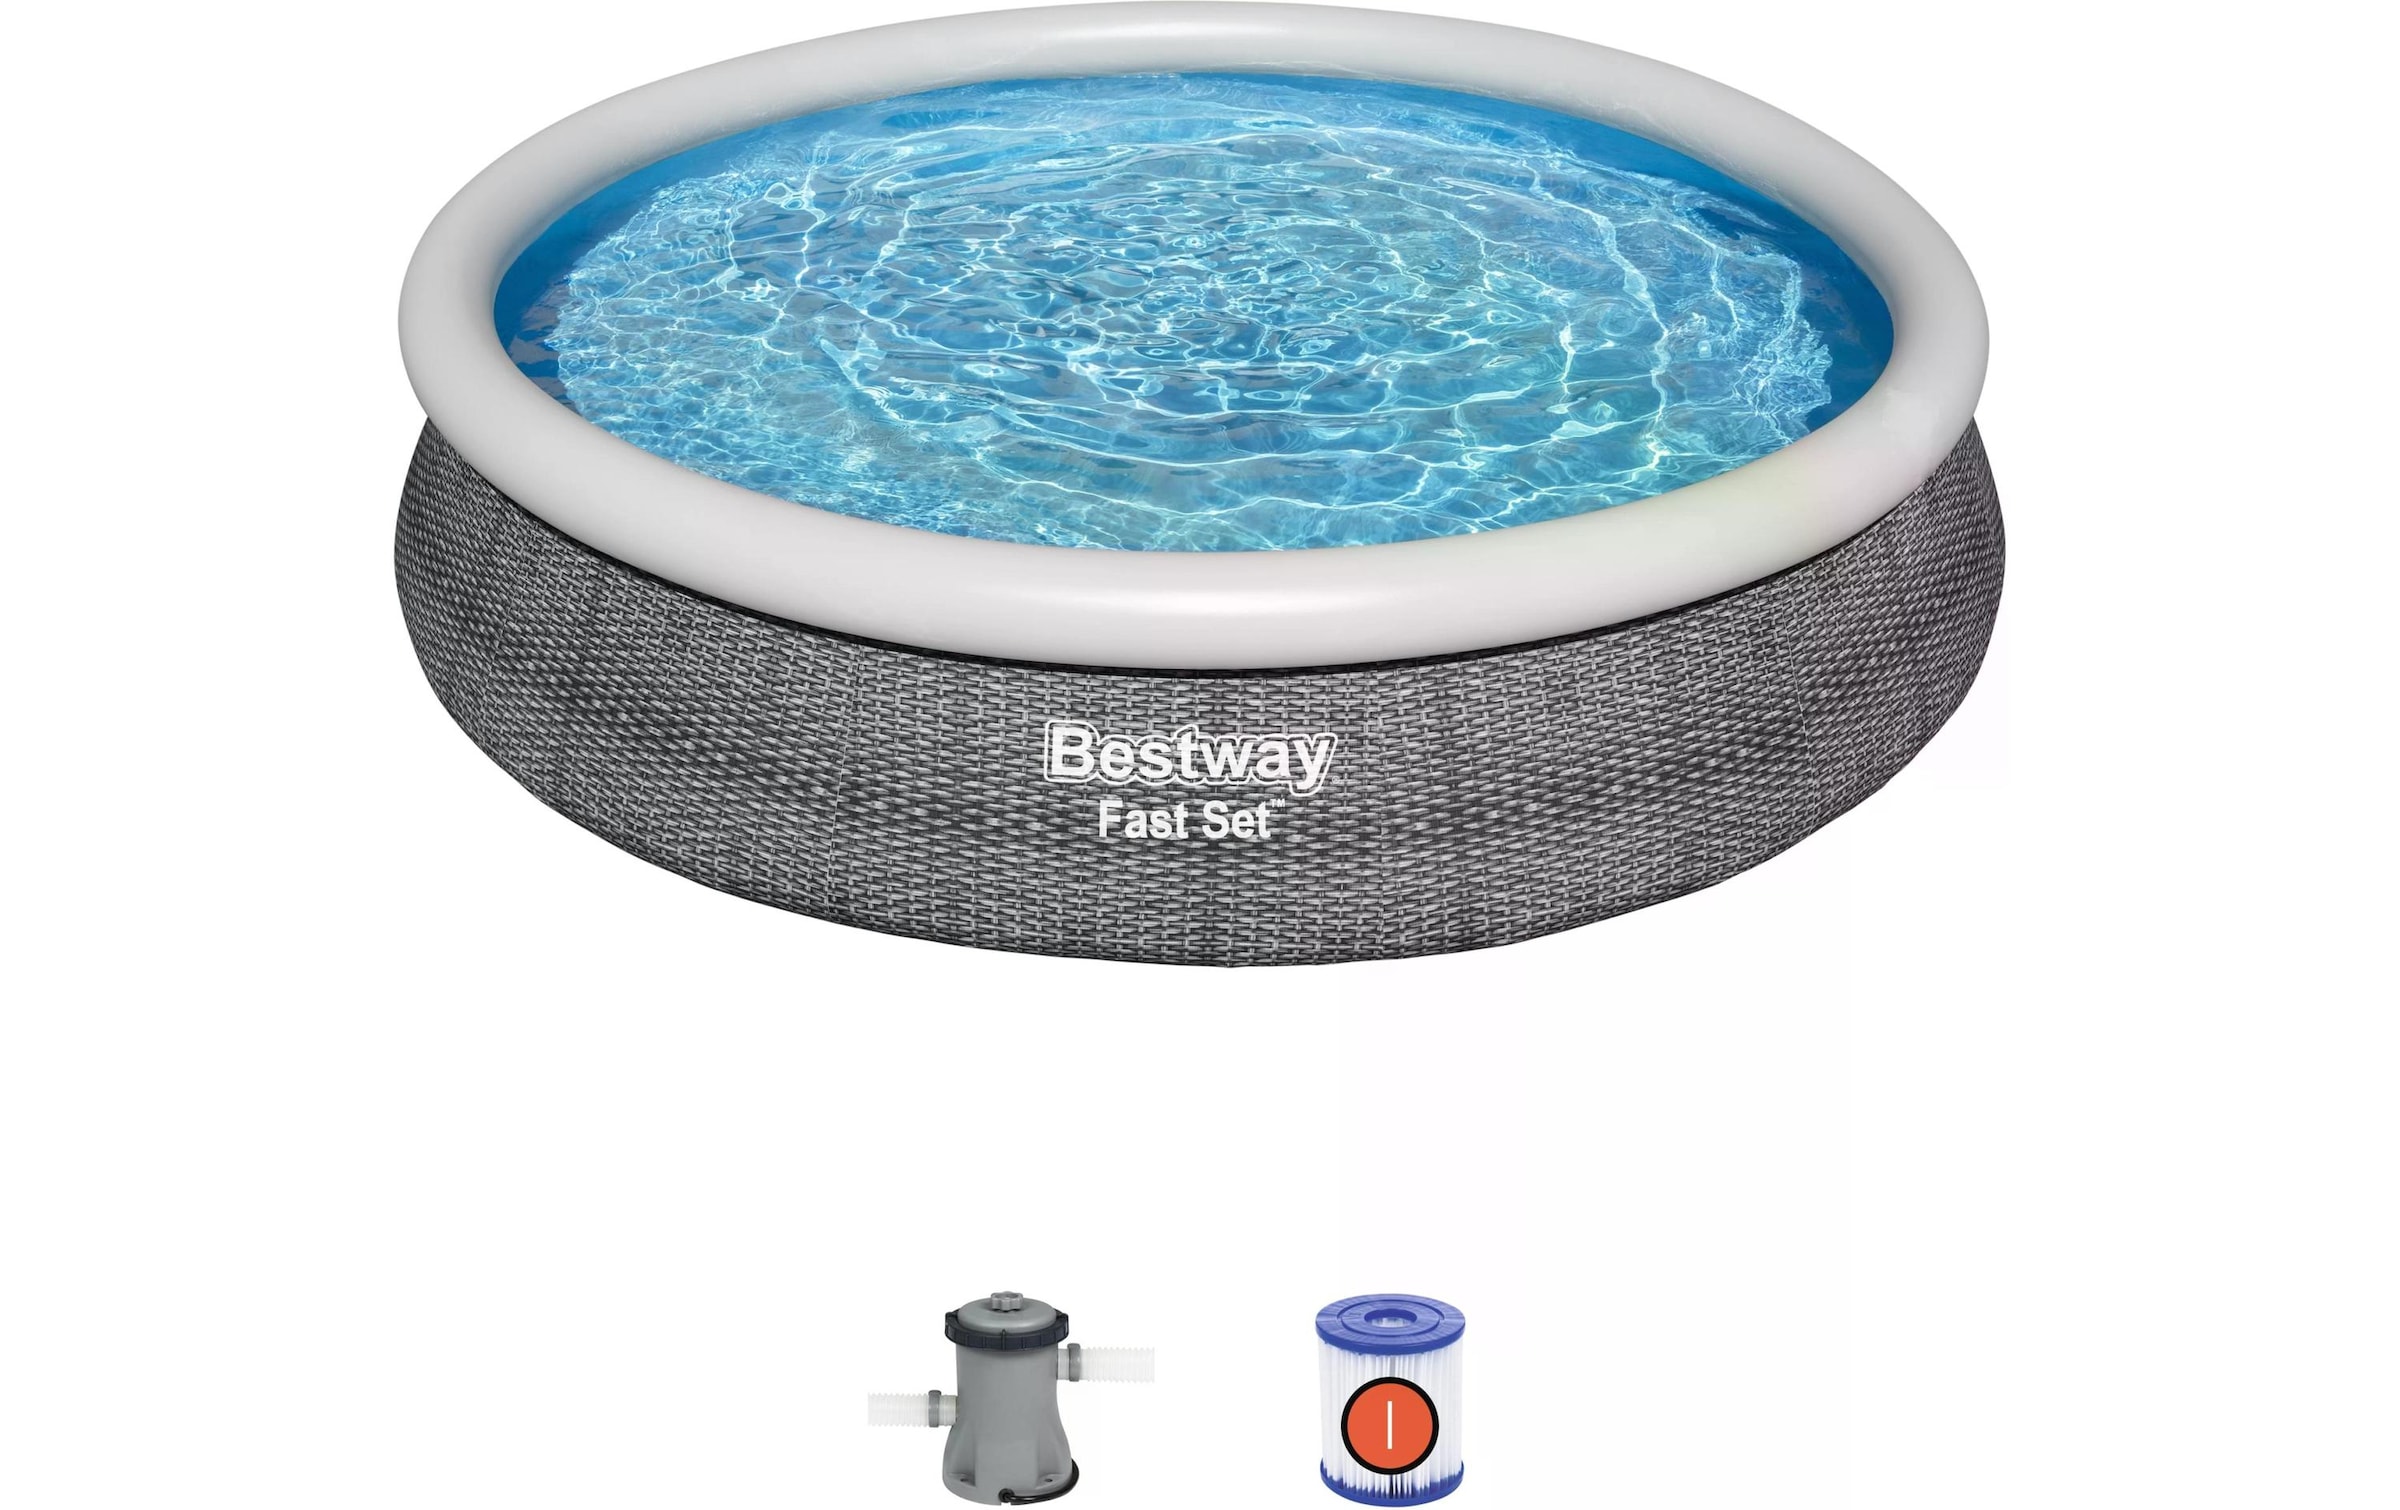 Bestway Pool »Fast Set Ø 366 x 76 cm«